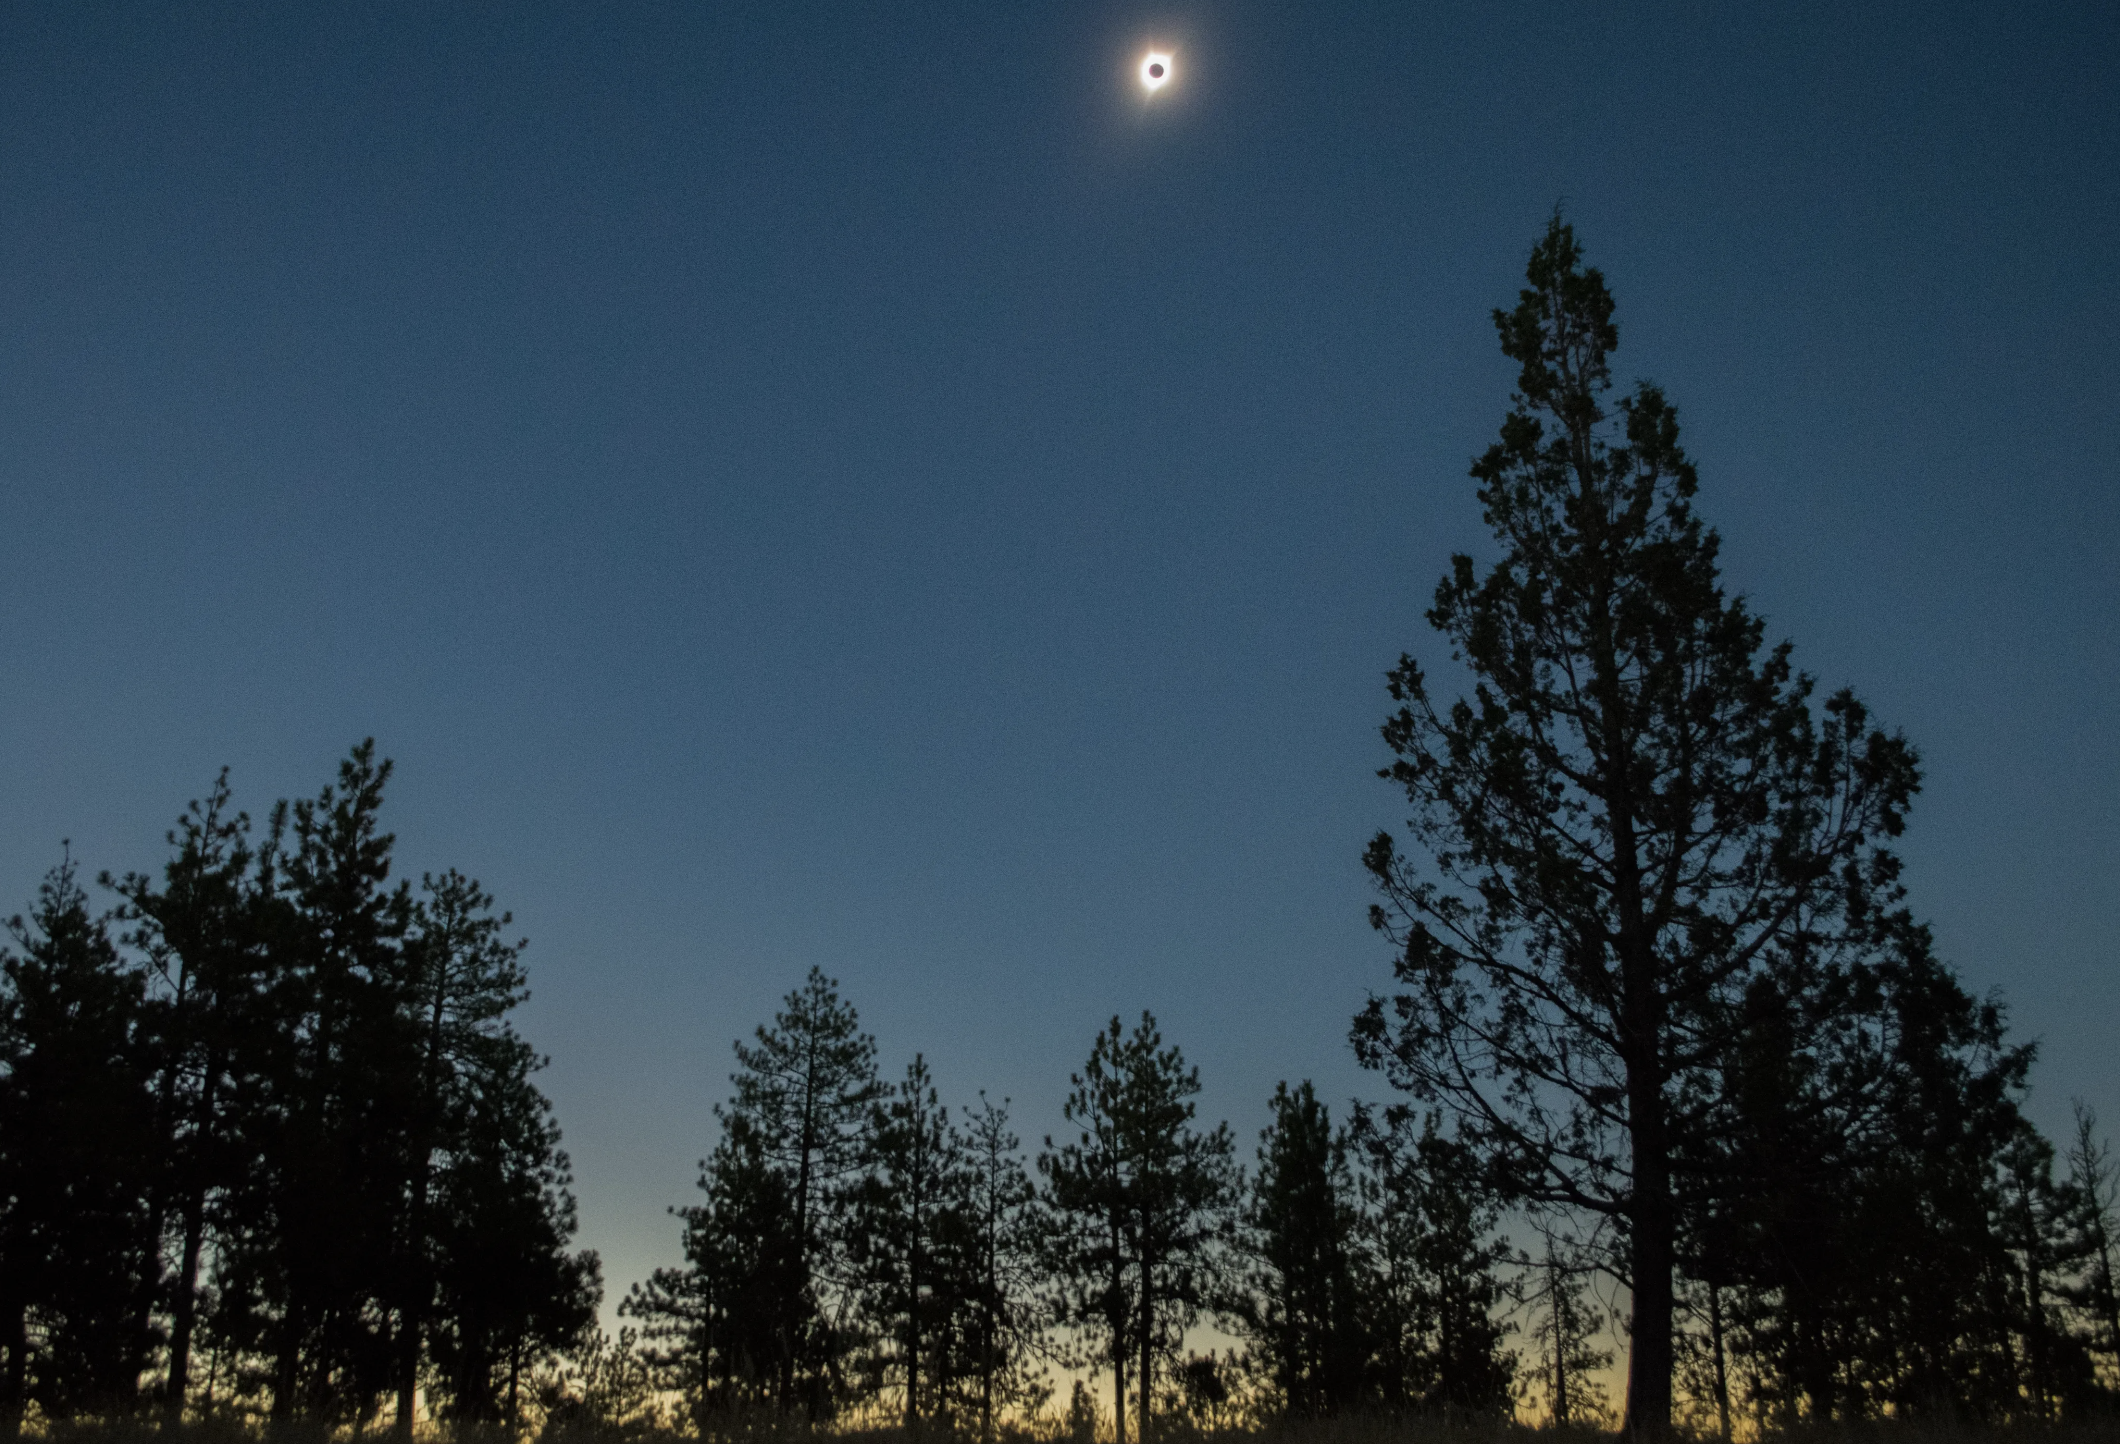 En esta imagen, se ve cómo eclipse solar total del 21 de agosto de 2017 baña en sombras el bosque nacional de Umatilla [en Estados Unidos], oscureciendo el cielo y bordeando el horizonte con una puesta de sol de 360 grados.